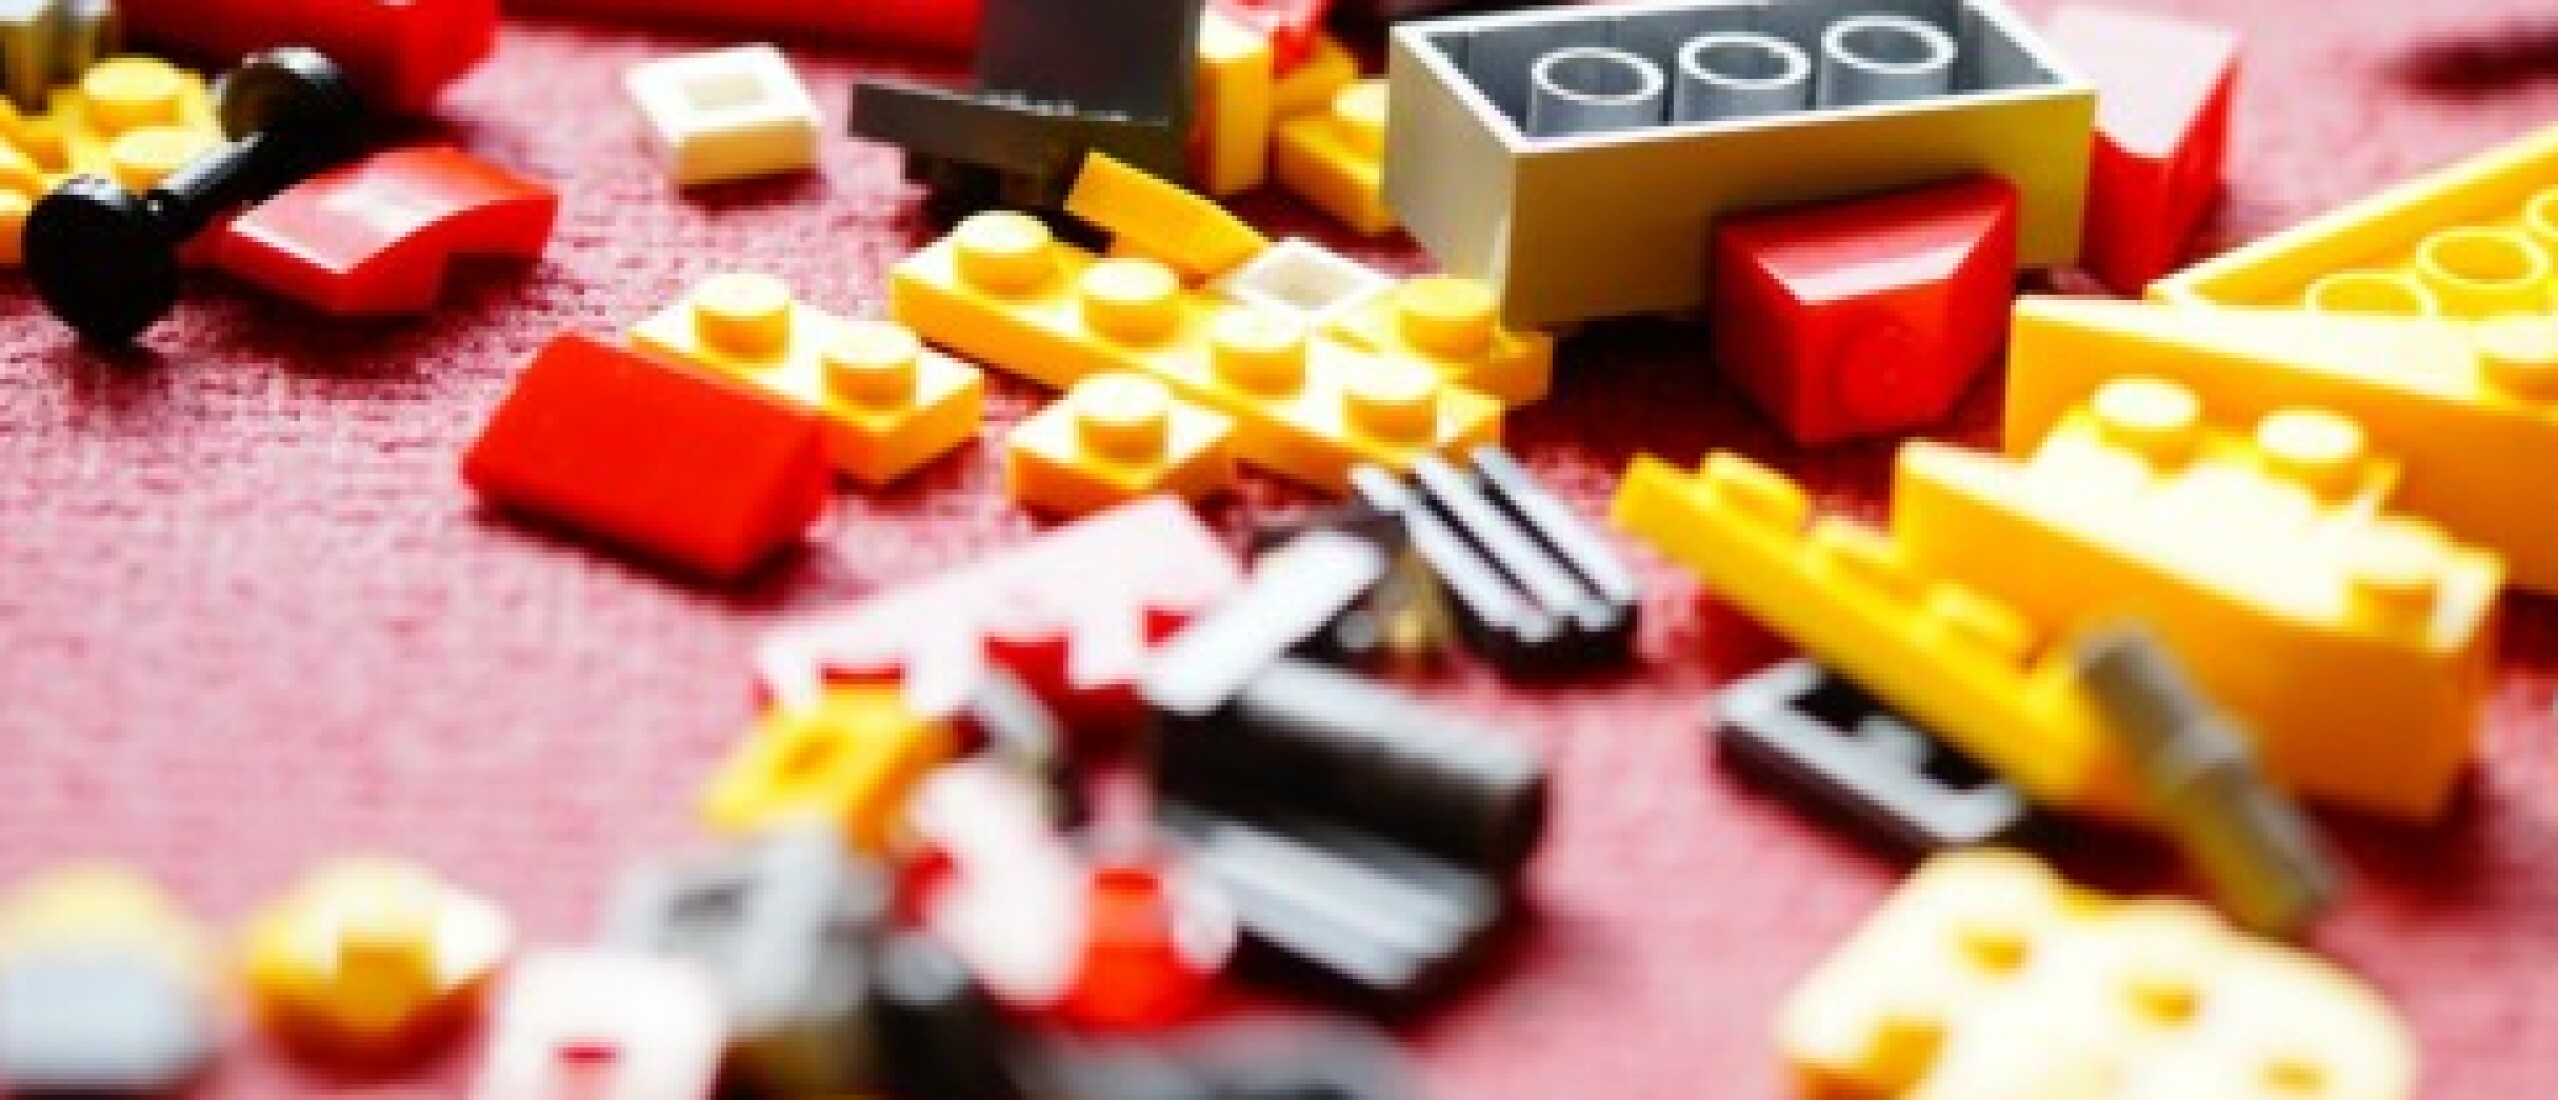 Legoblokjes voor ideeënbouwsels